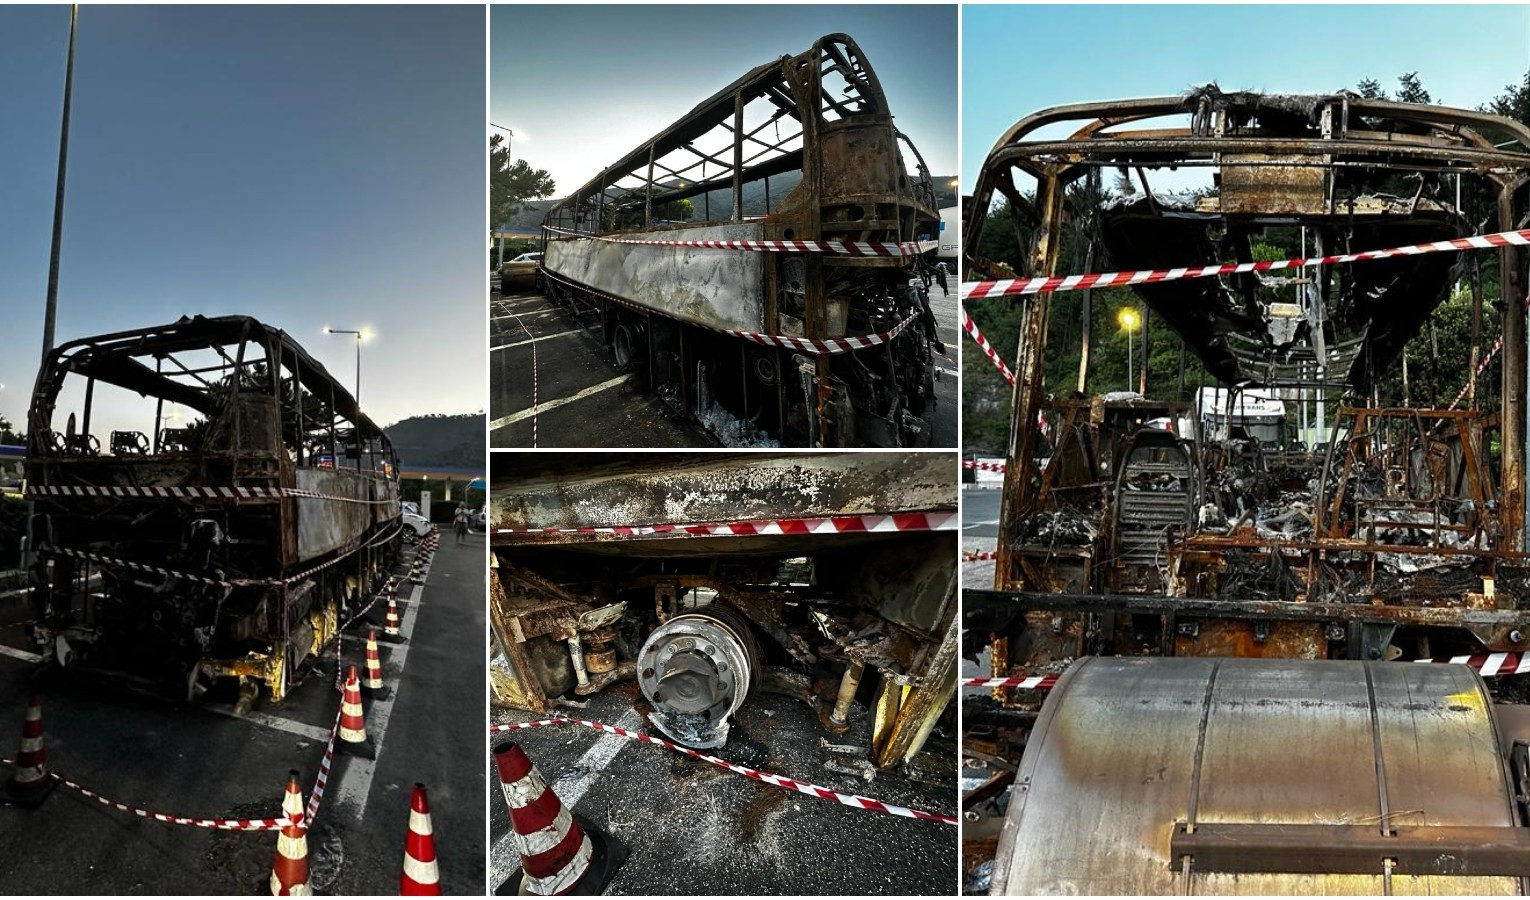  Pullman in fiamme: indagine sul modello del veicolo andato a fuoco